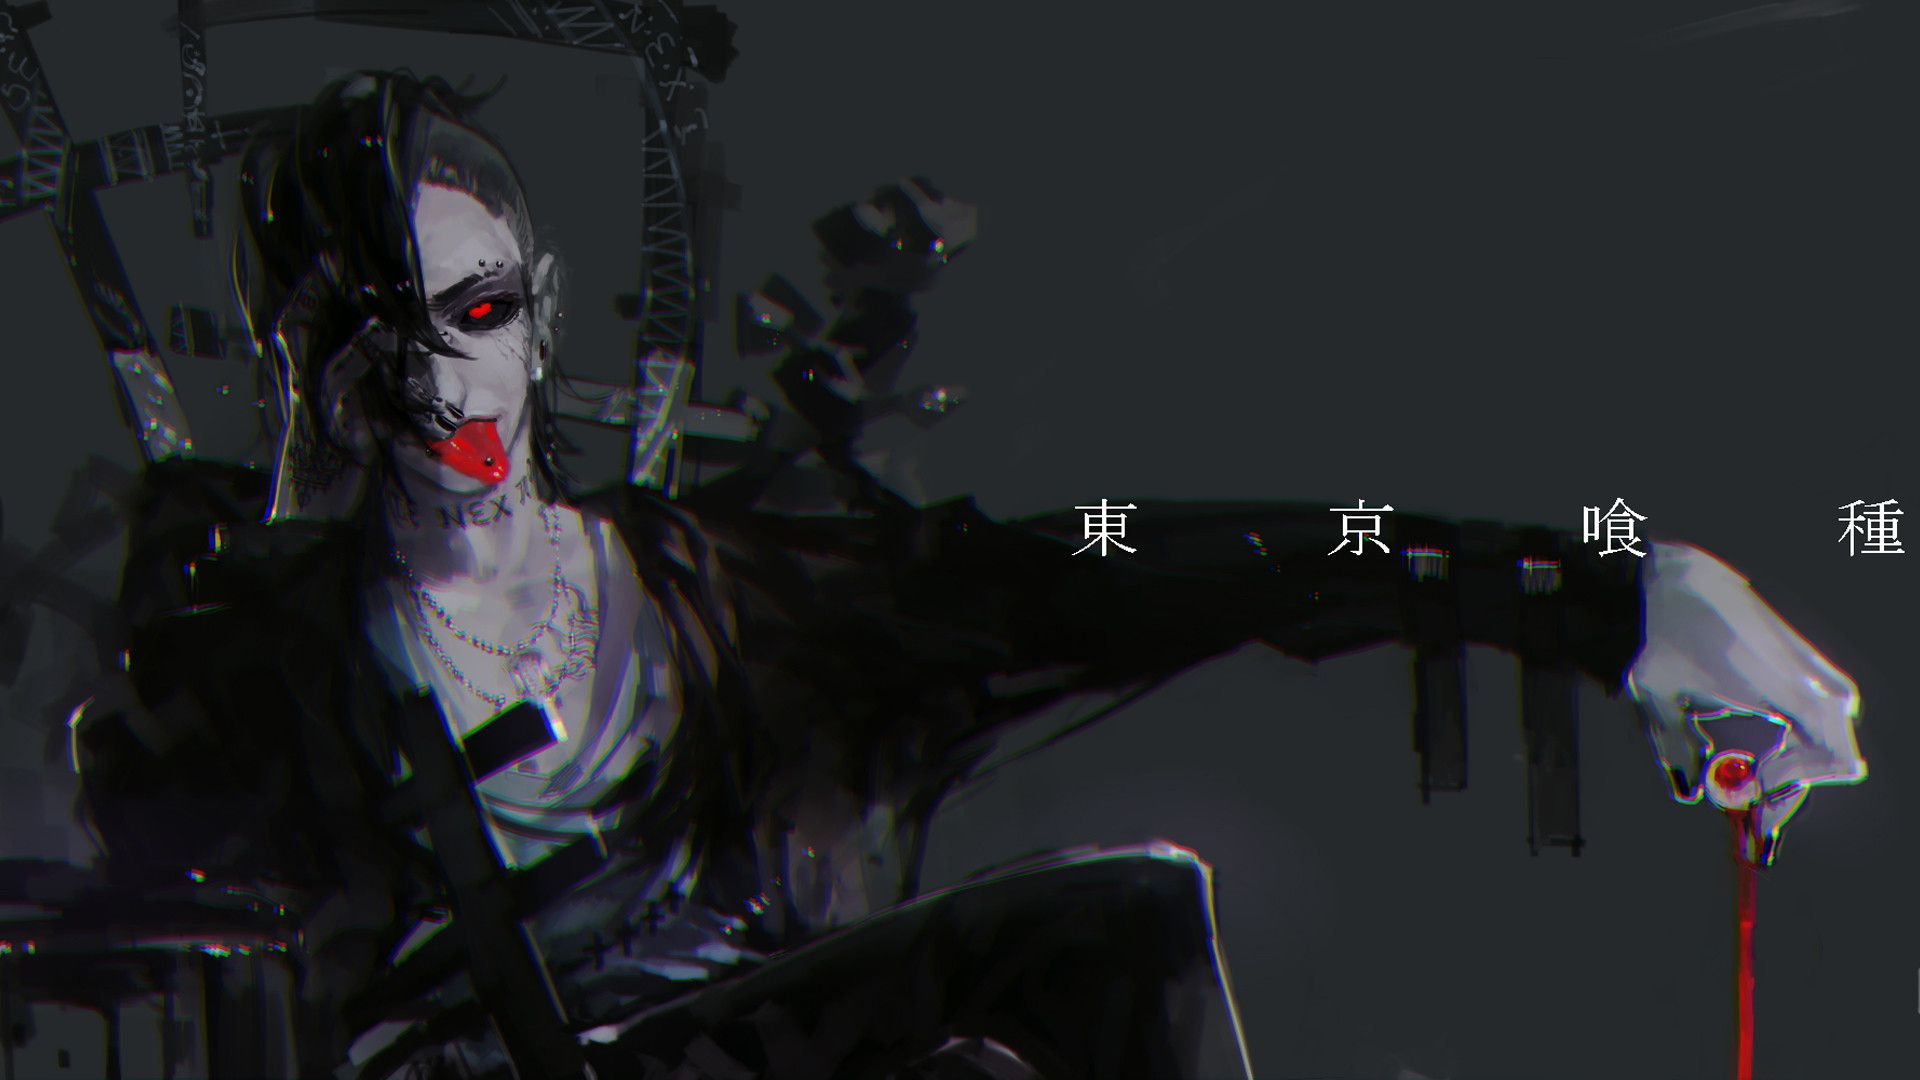 Uta Tokyo Ghoul Wallpaper Image